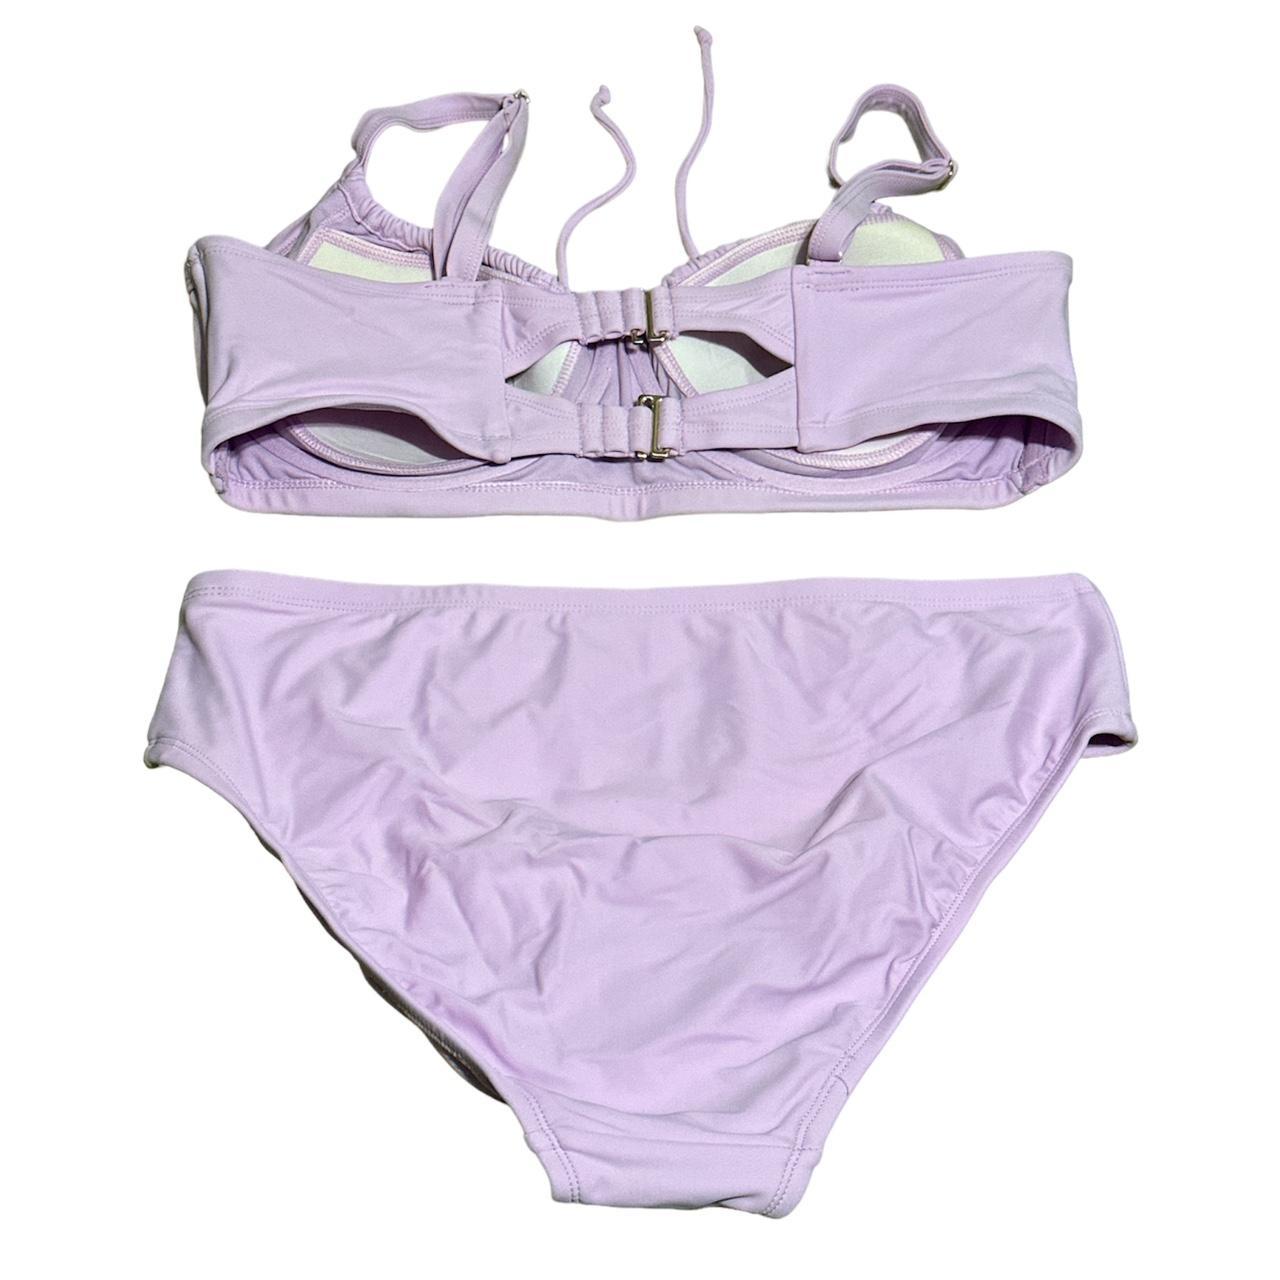 Xhilaration Women's Purple Bikinis-and-tankini-sets | Depop